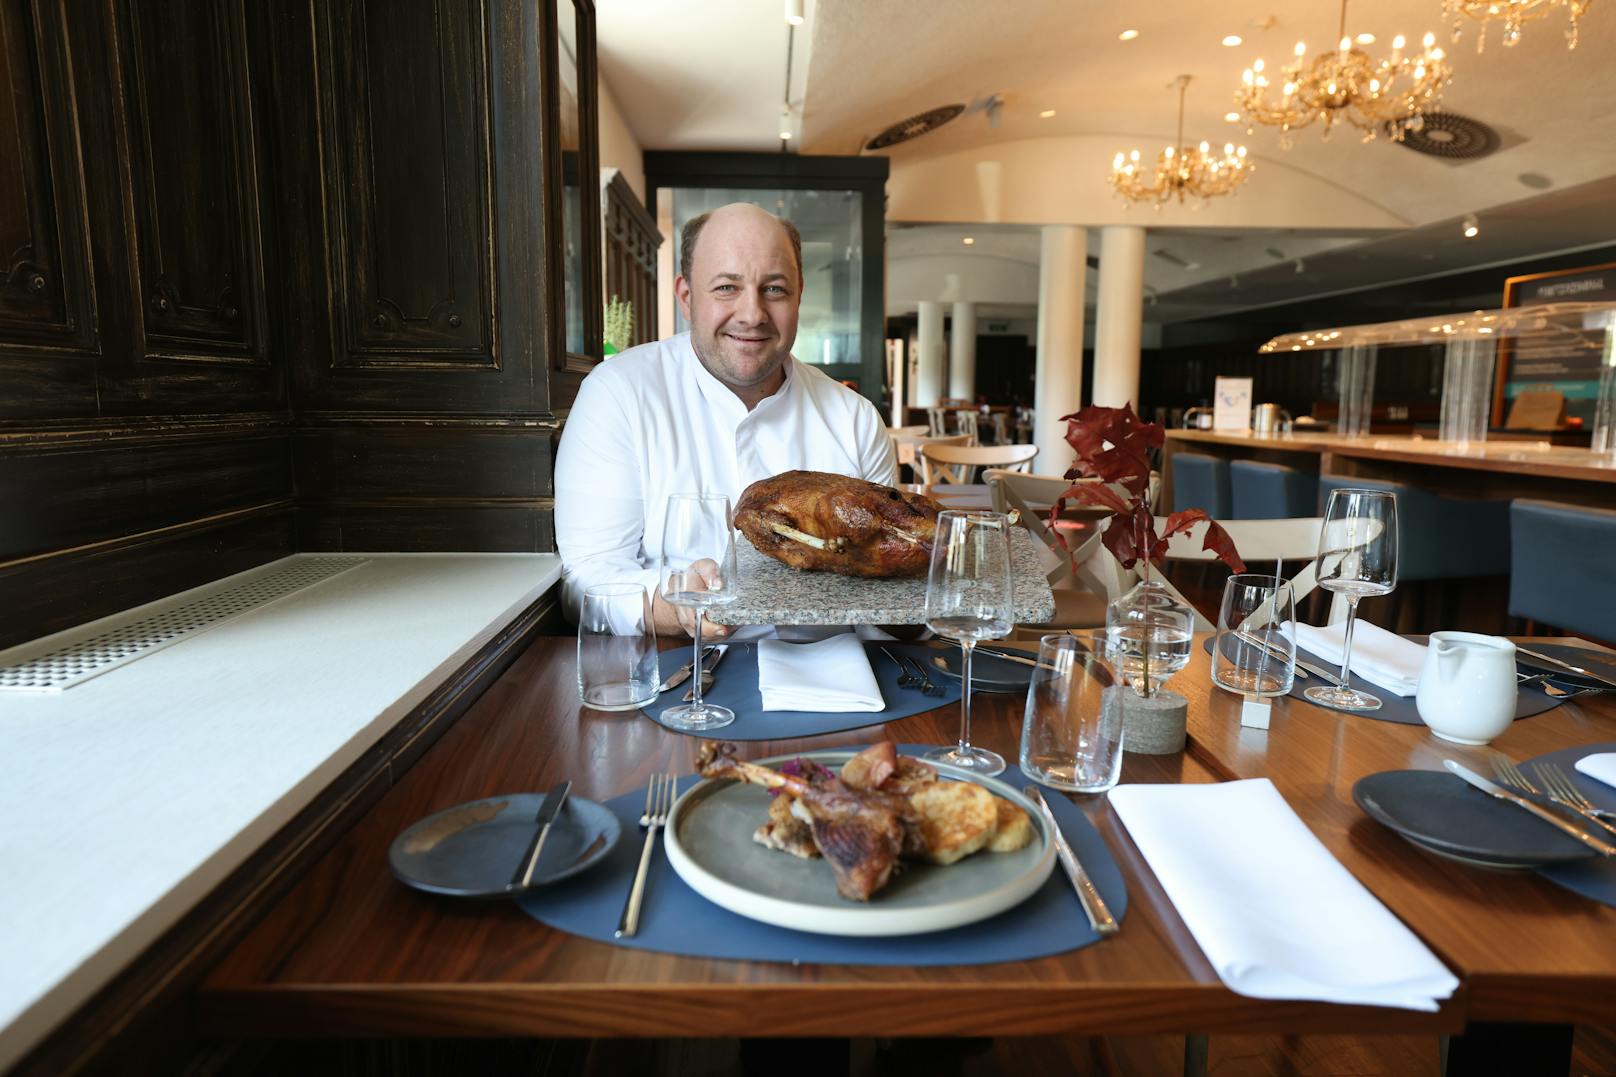 Chefkoch Christoph Stiglitz vom Restaurant "Handwerk" im Arcotel Wimberger.